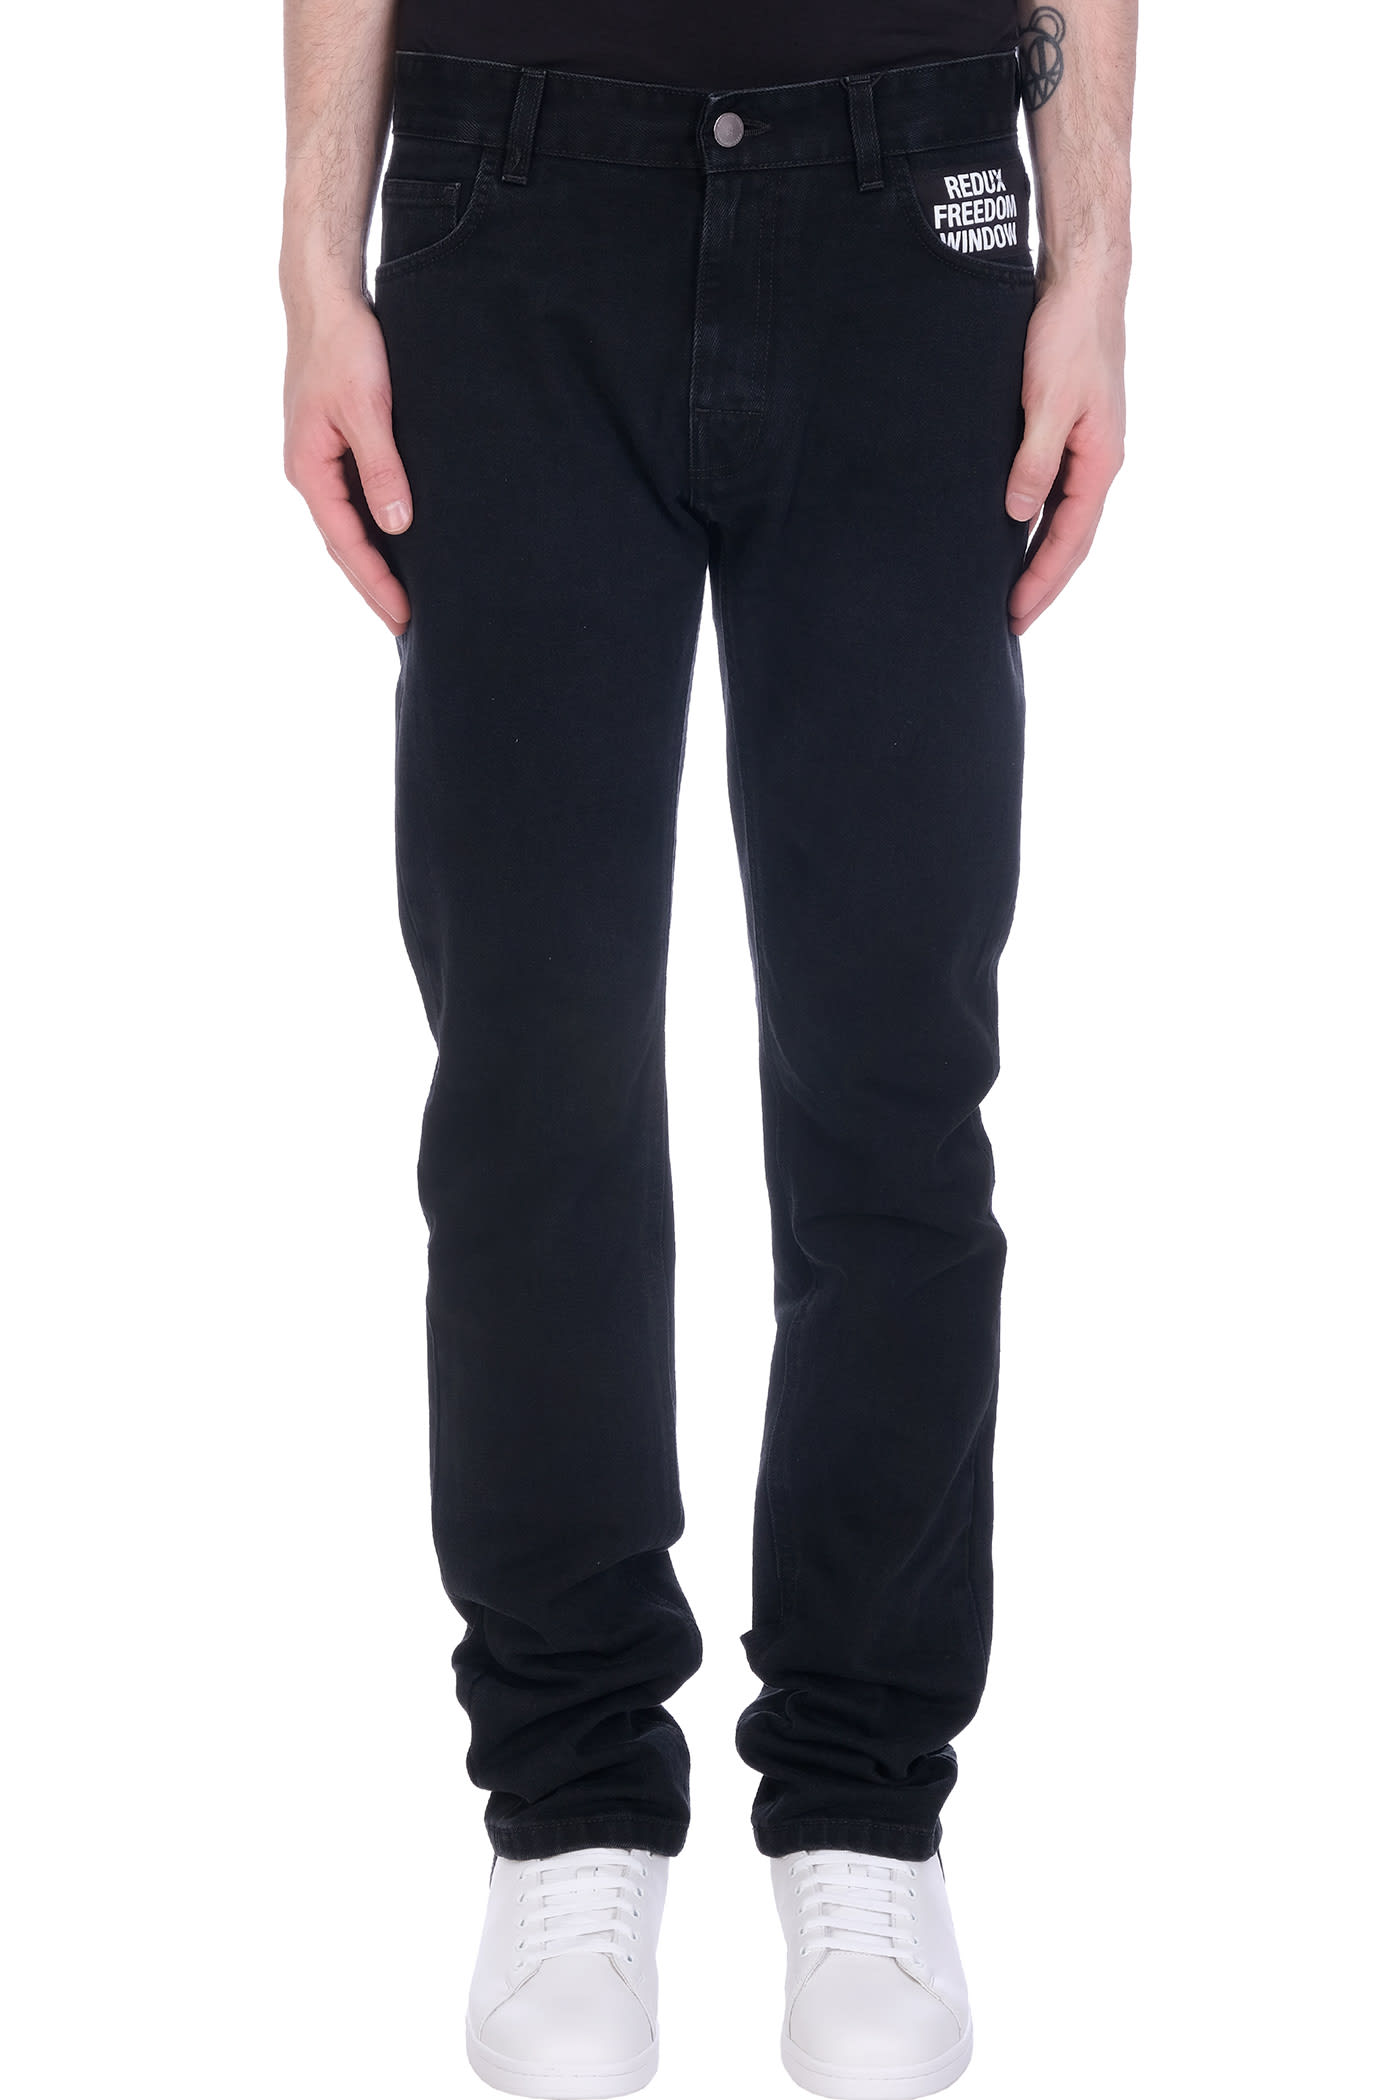 Raf Simons Jeans In Black Denim